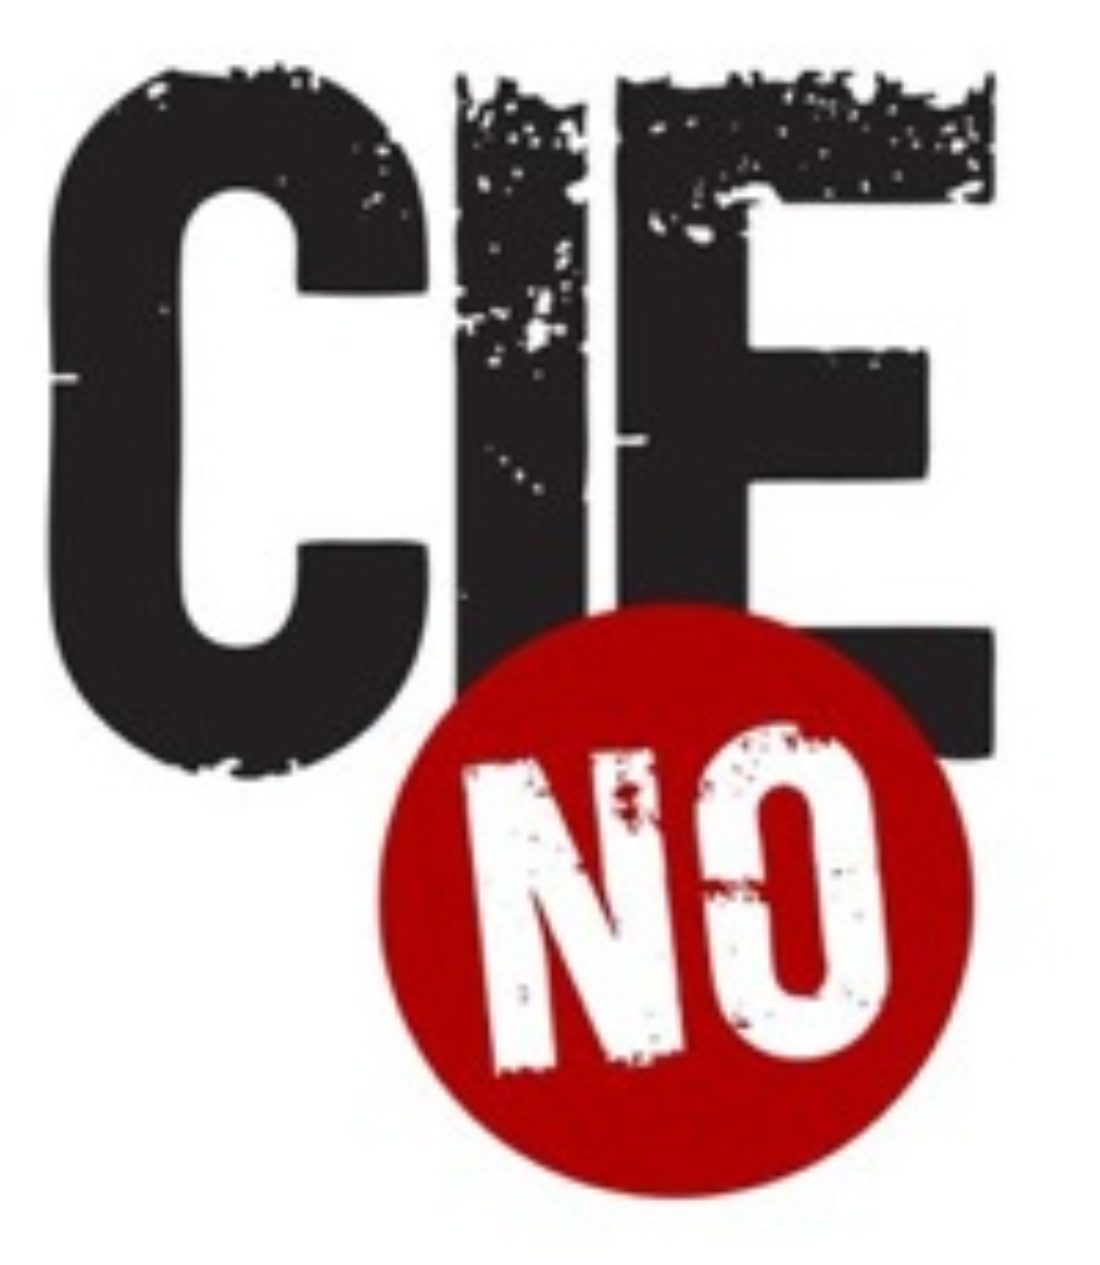 26 octubre, Valencia : Concentración «Cies No»